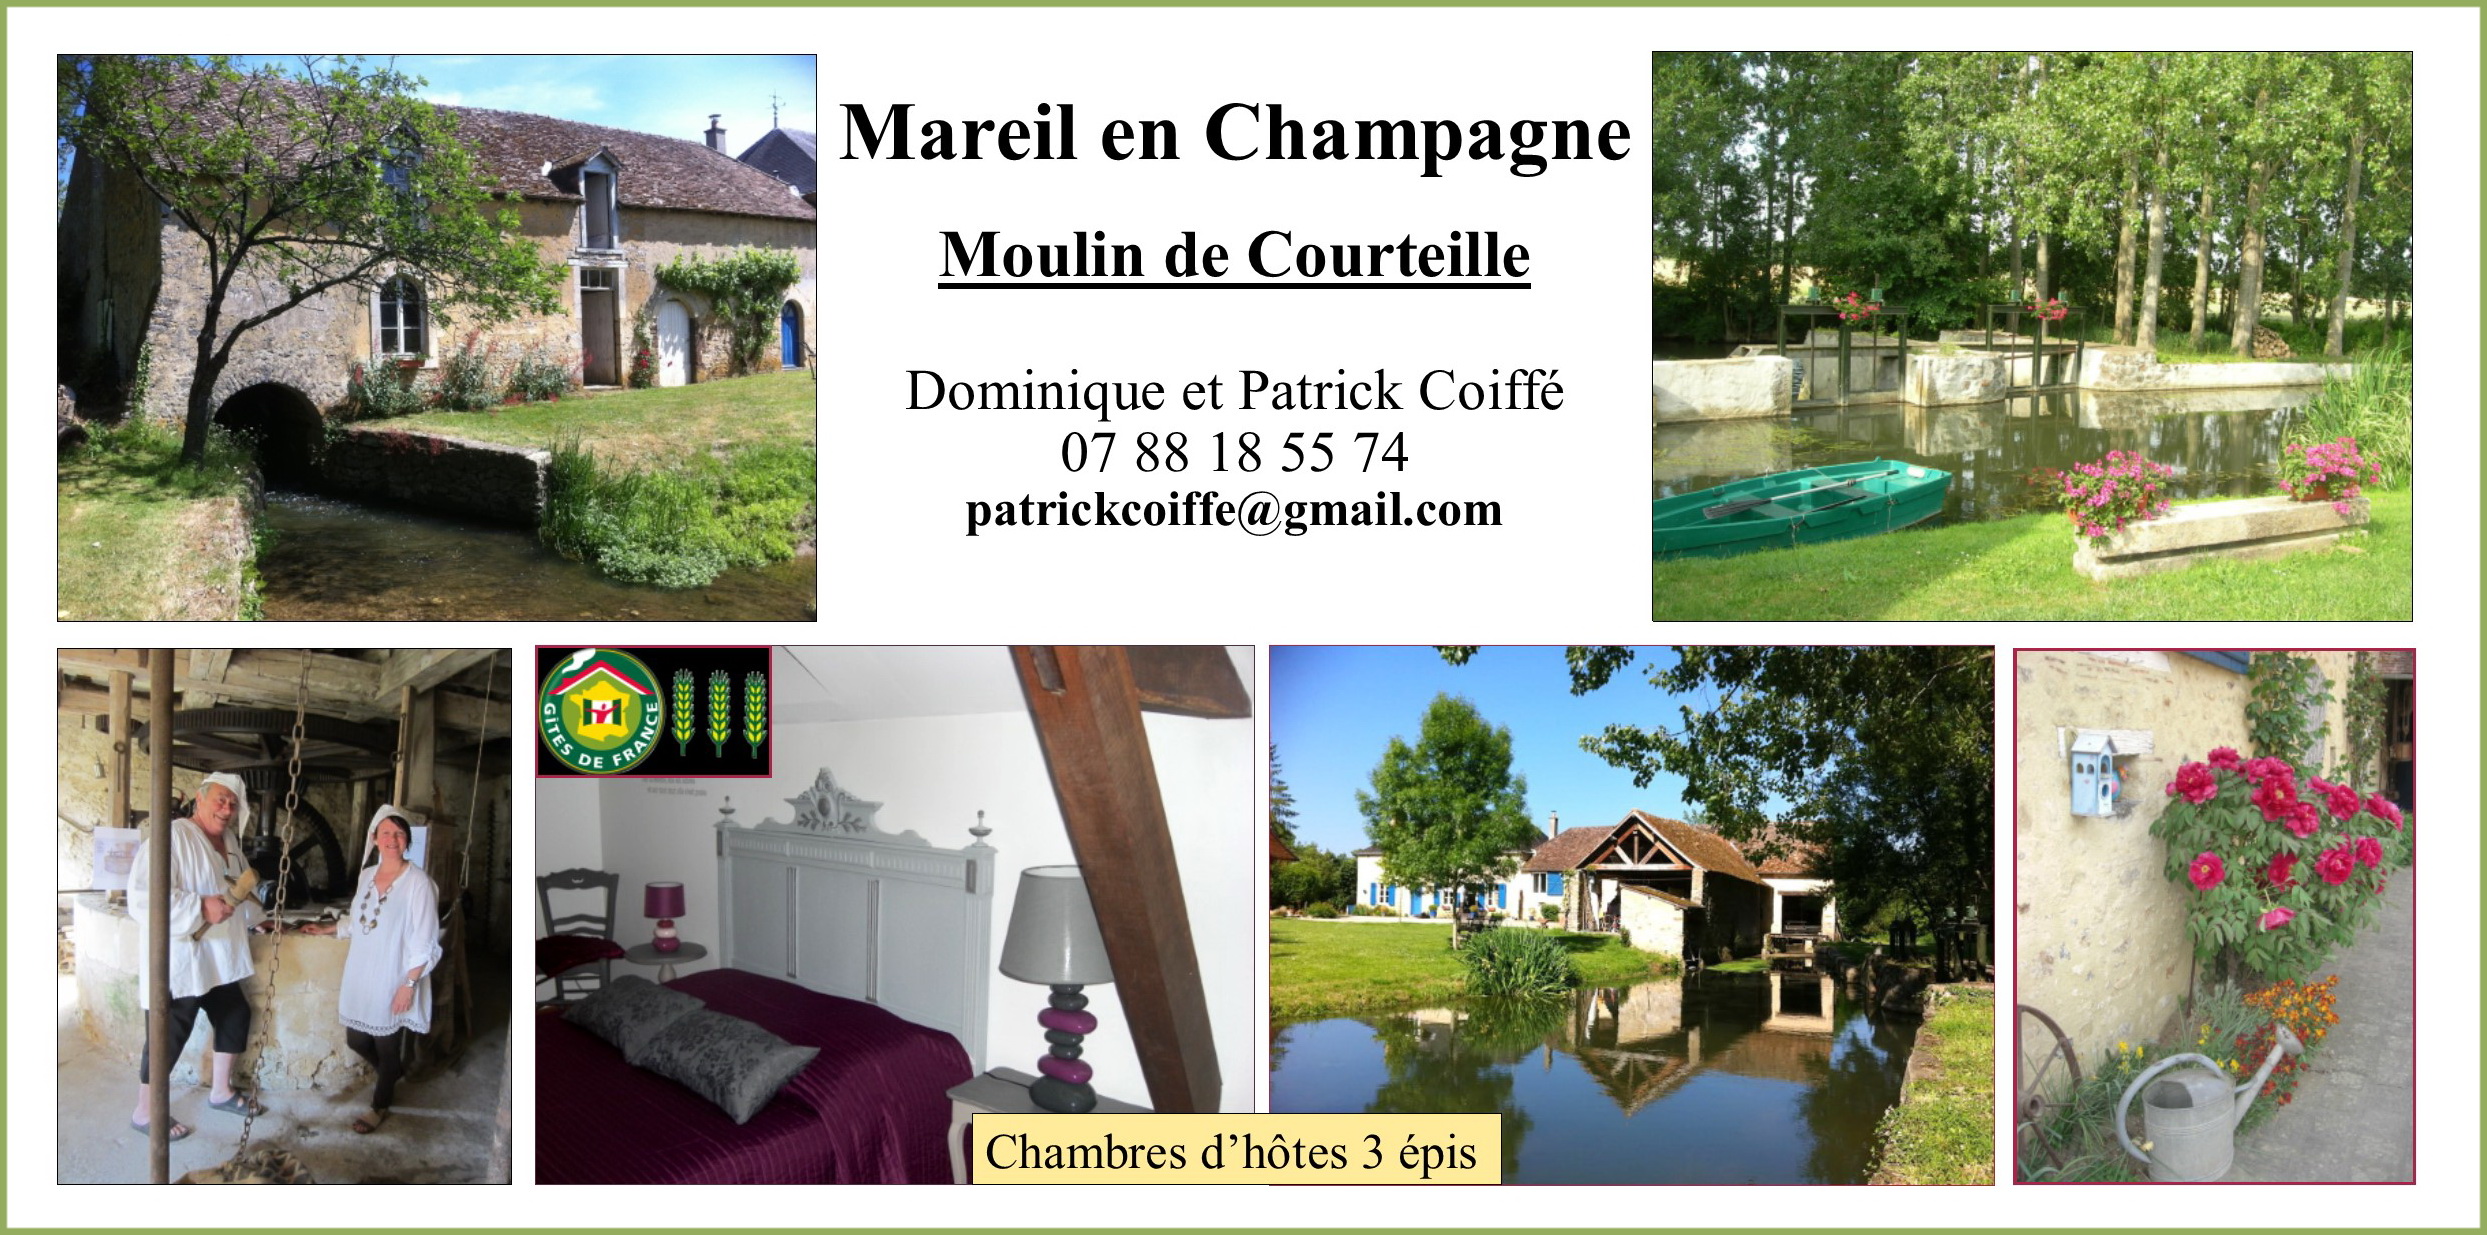 Le moulin de Courteille à Mareil en Champagne